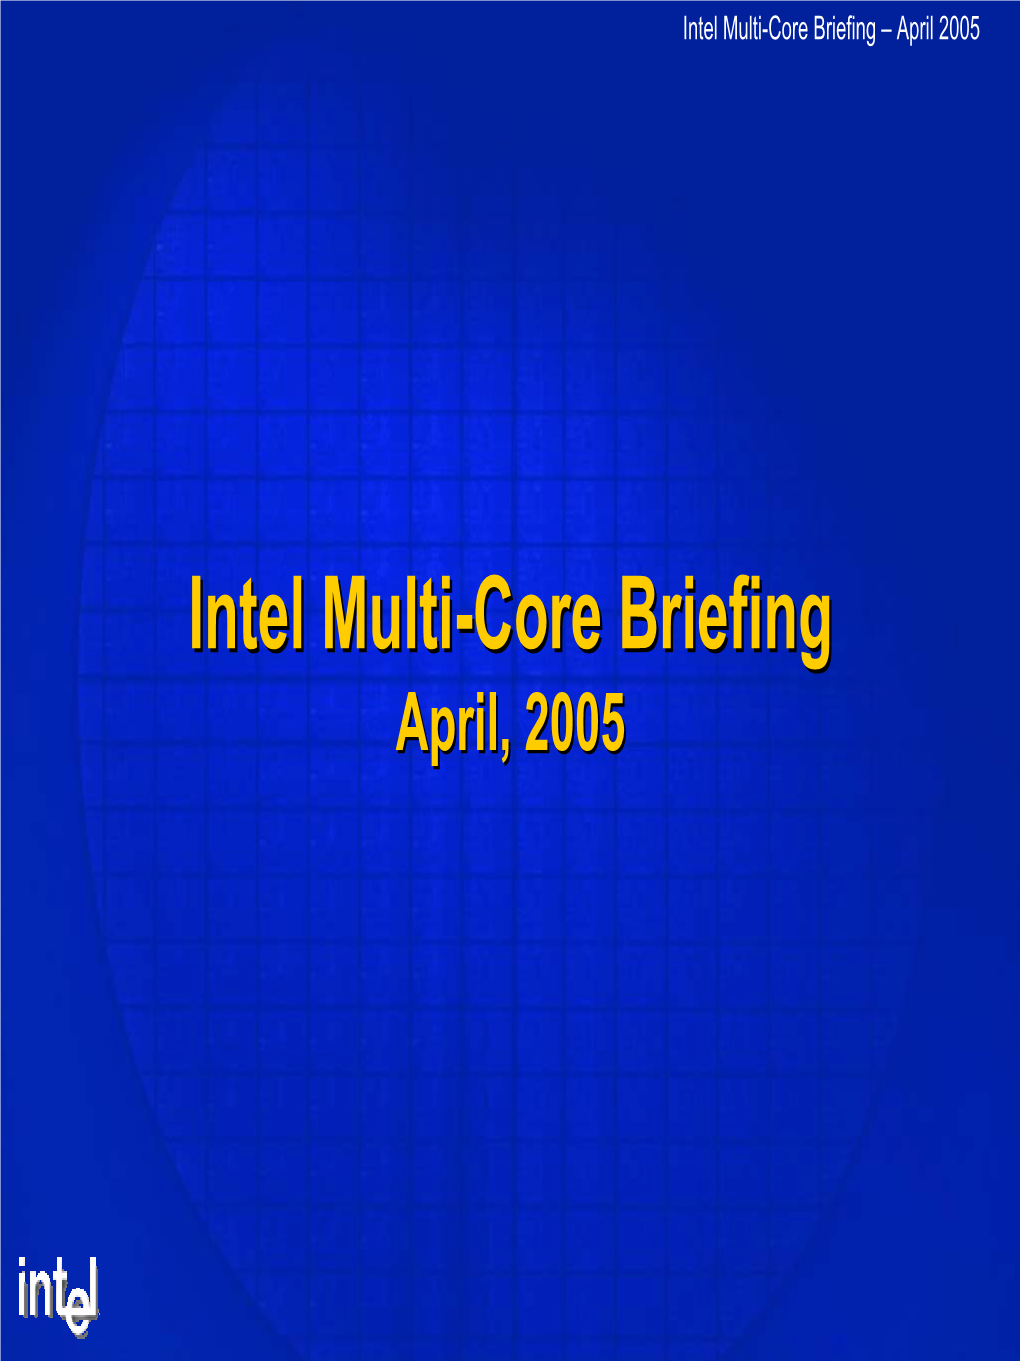 Intel Multi-Core Briefing – April 2005